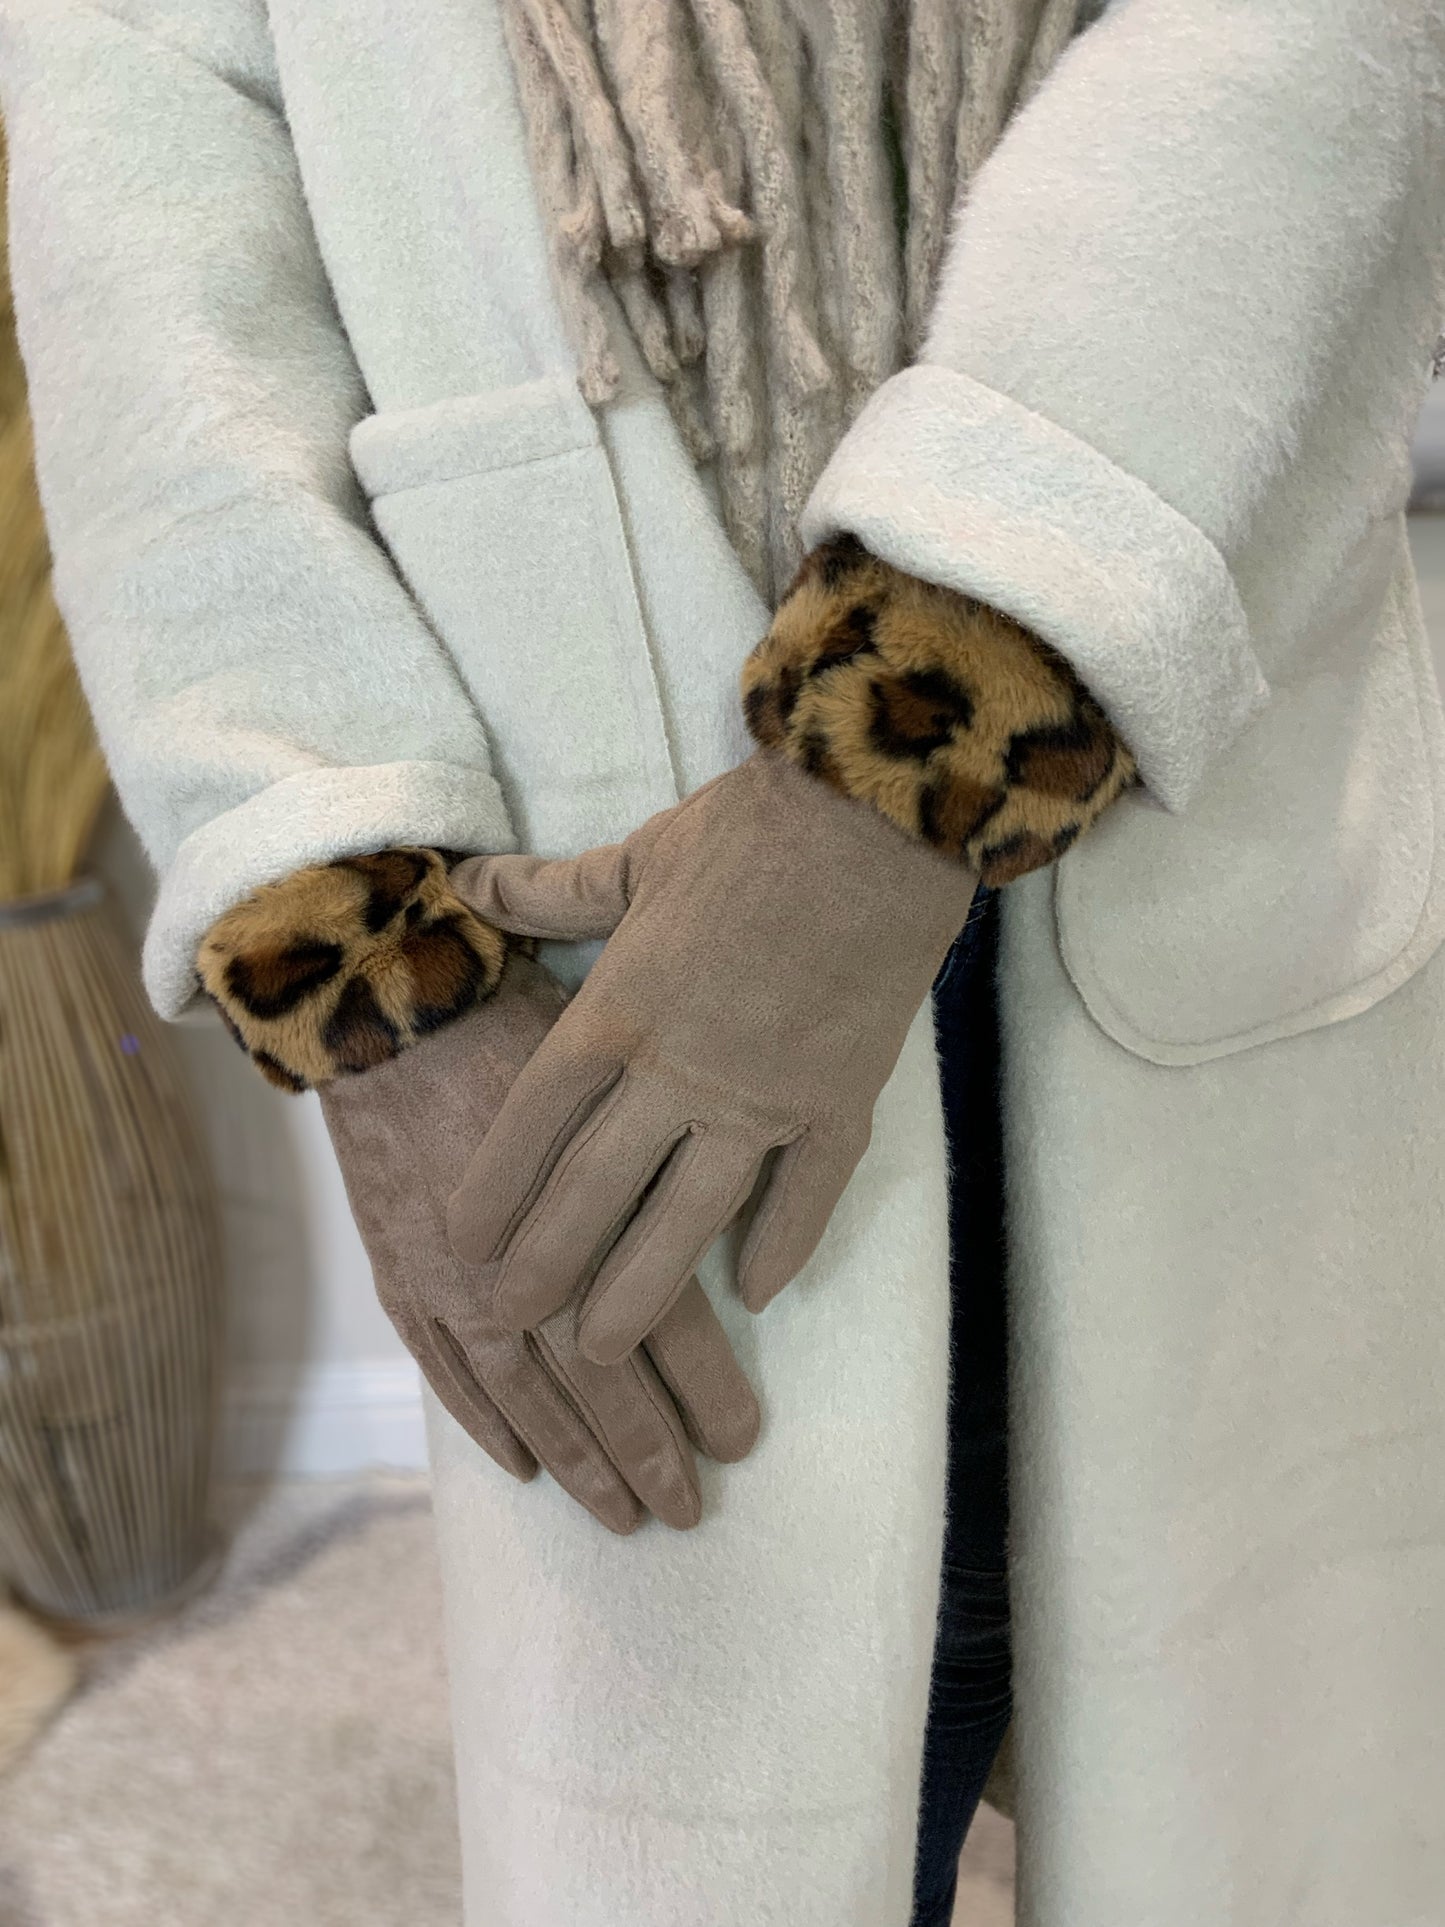 Fur Trim Gloves